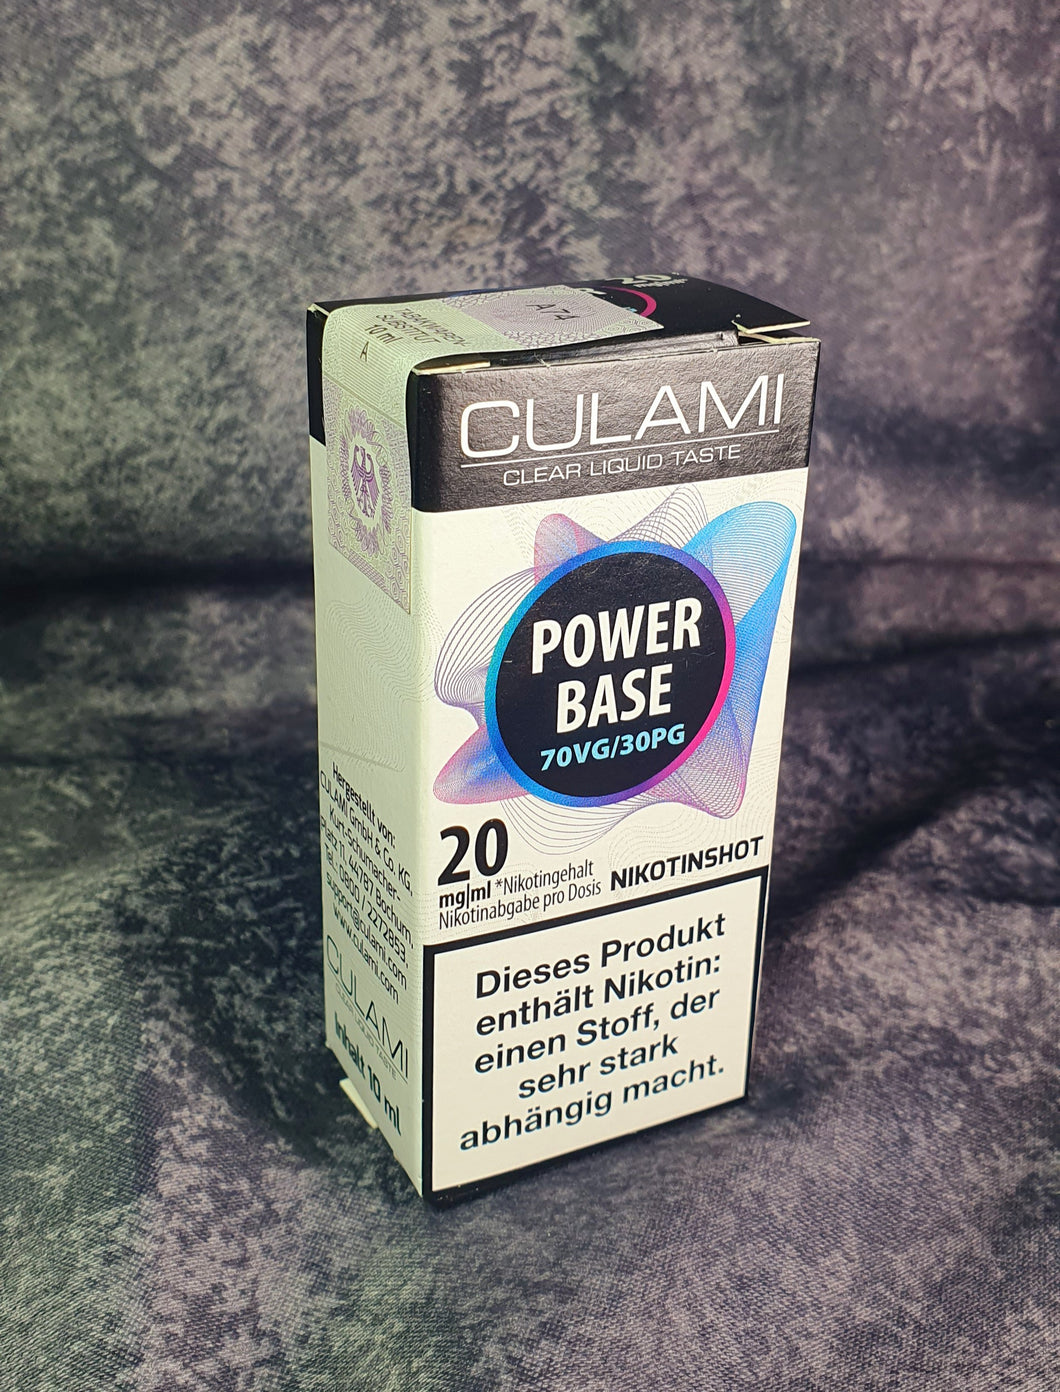 Culami Nikotin Shot - 70v/30p - 20 mg